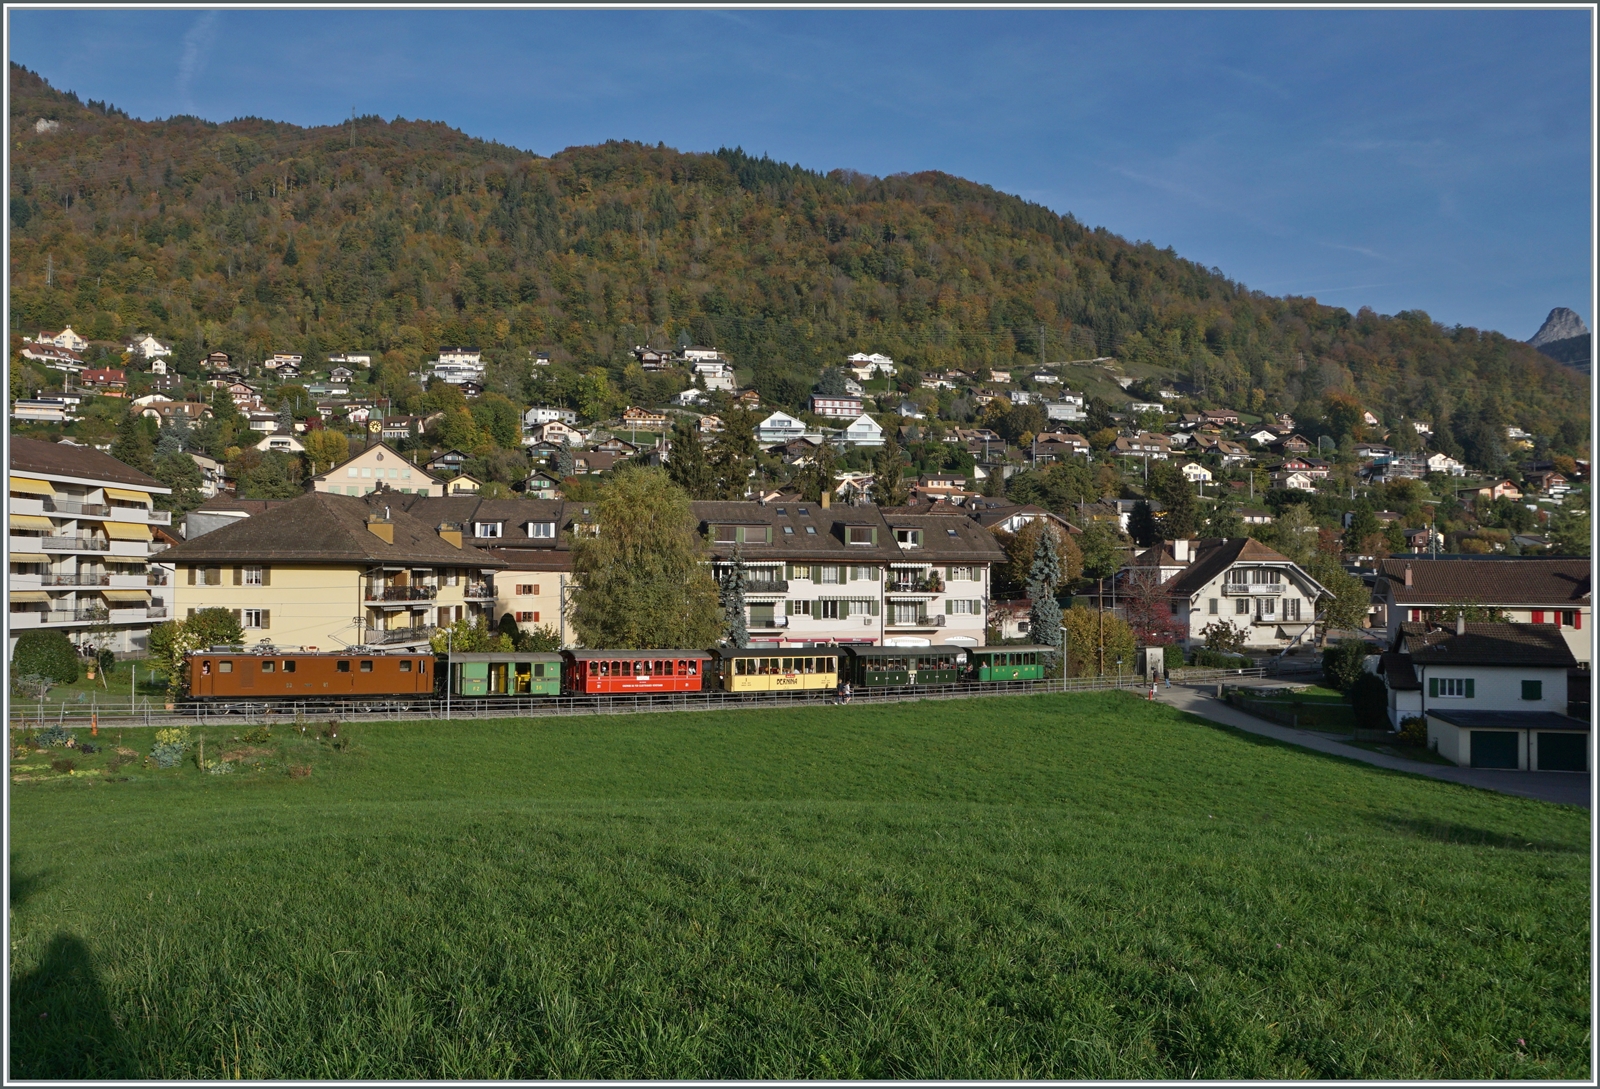  La DER de la Saison!  (Saisonabschlussfeier der Blonay-Chamby Bahn 2022) - Die Bernina Bahn RhB Ge 4/4 81 der Blonay-Chamby Bahn ist kurz nach Blonay mit dem Riviera Belle Epoque auf dem Weg nach Vevey.

30. Oktober 2022